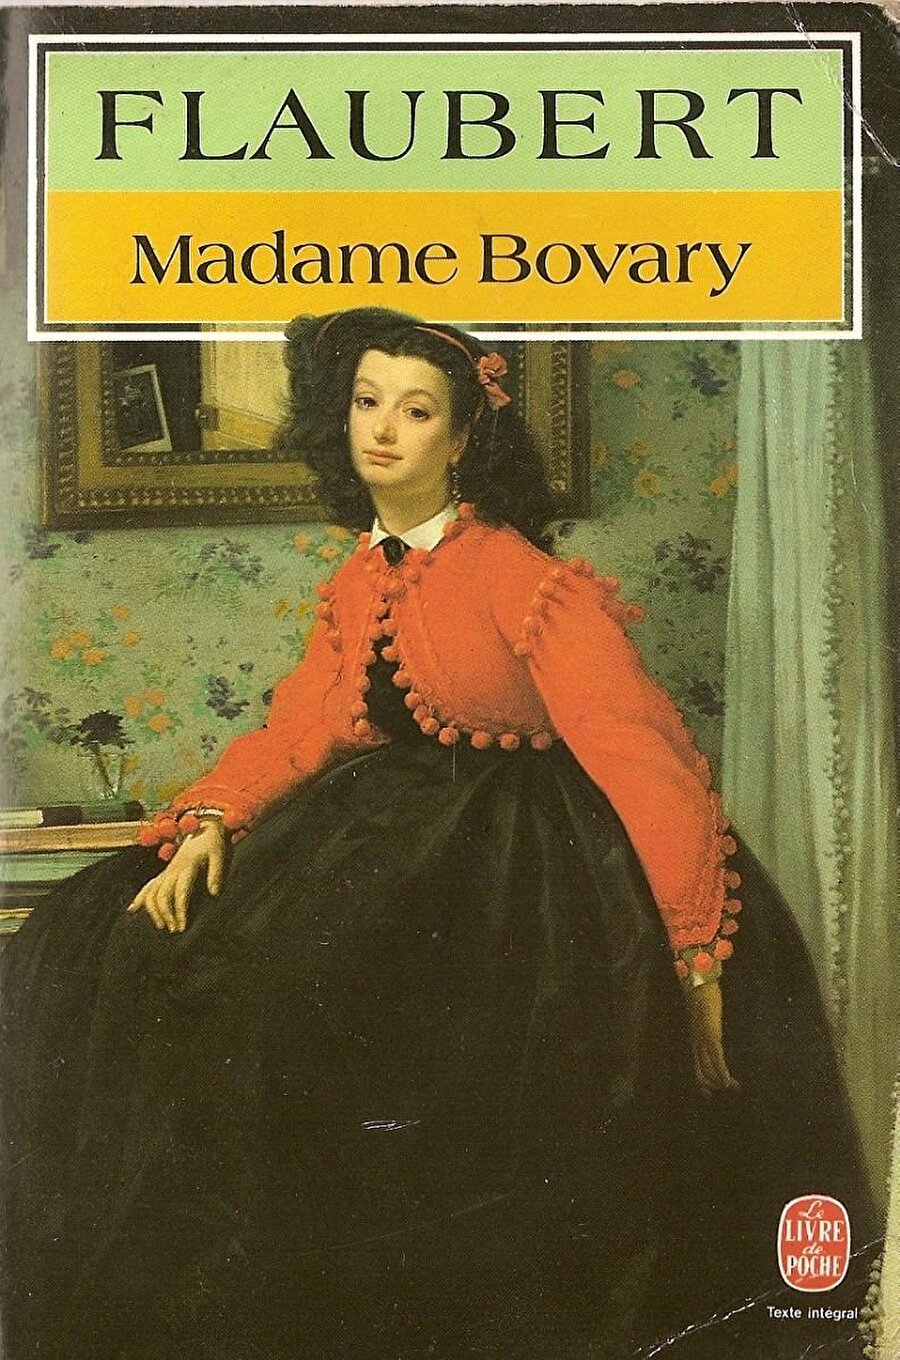 Madam Bovary  / Gustave Flaubert

                                    İyi kalpli olmasına karşın sıradan bir doktor olan Charles Bovary'nin yüksek idealleri ve lüks tutkusu olan romantik karısı Emma Bovary'nin, yaşamının tekdüzeliğinden sıyrılmak için girdiği durumları ve yaşadığı çeşitli aşk ilişkilerini konu alan roman birçok çevre tarafından ilk çağdaş realist roman kabul edilir.
                                